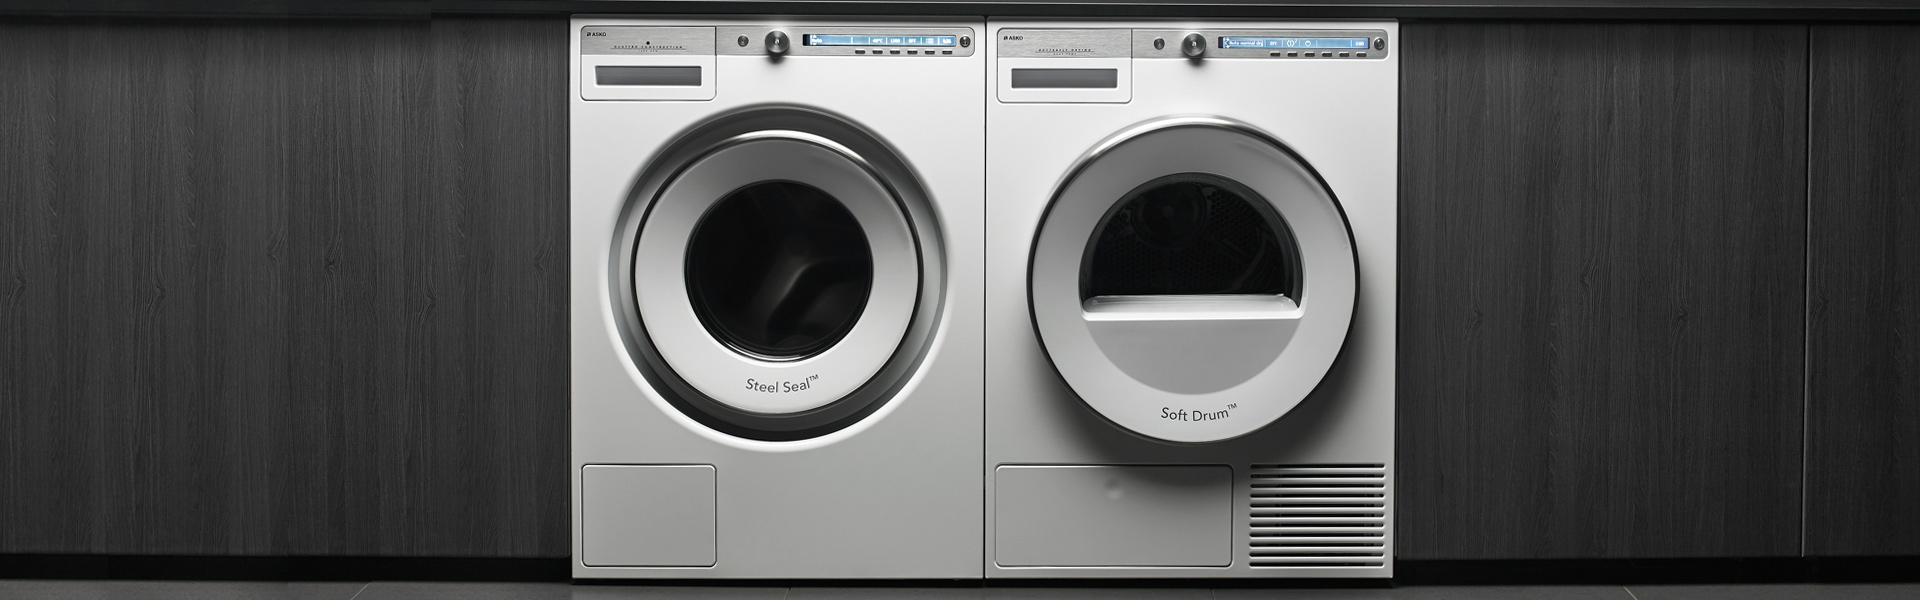 Legacy vezel Zelfrespect Asko wasmachines - Bex Elektro